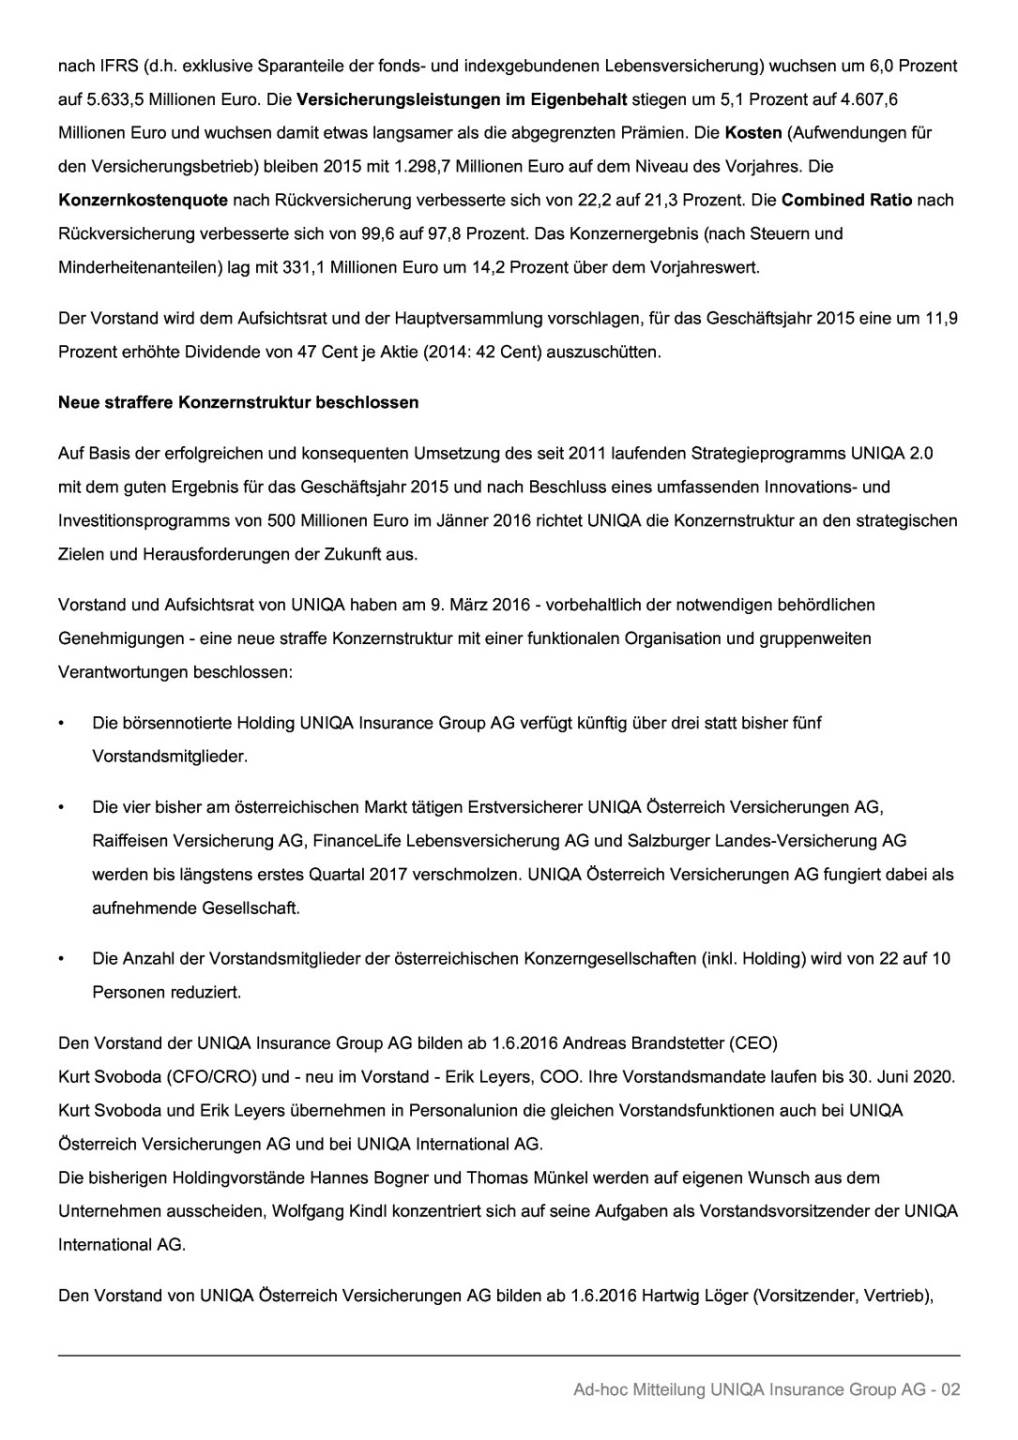 Uniqa: Vorläufige Geschäftszahlen 2015, Seite 2/4, komplettes Dokument unter http://boerse-social.com/static/uploads/file_756_uniqa_vorlaufige_geschaftszahlen_2015.pdf